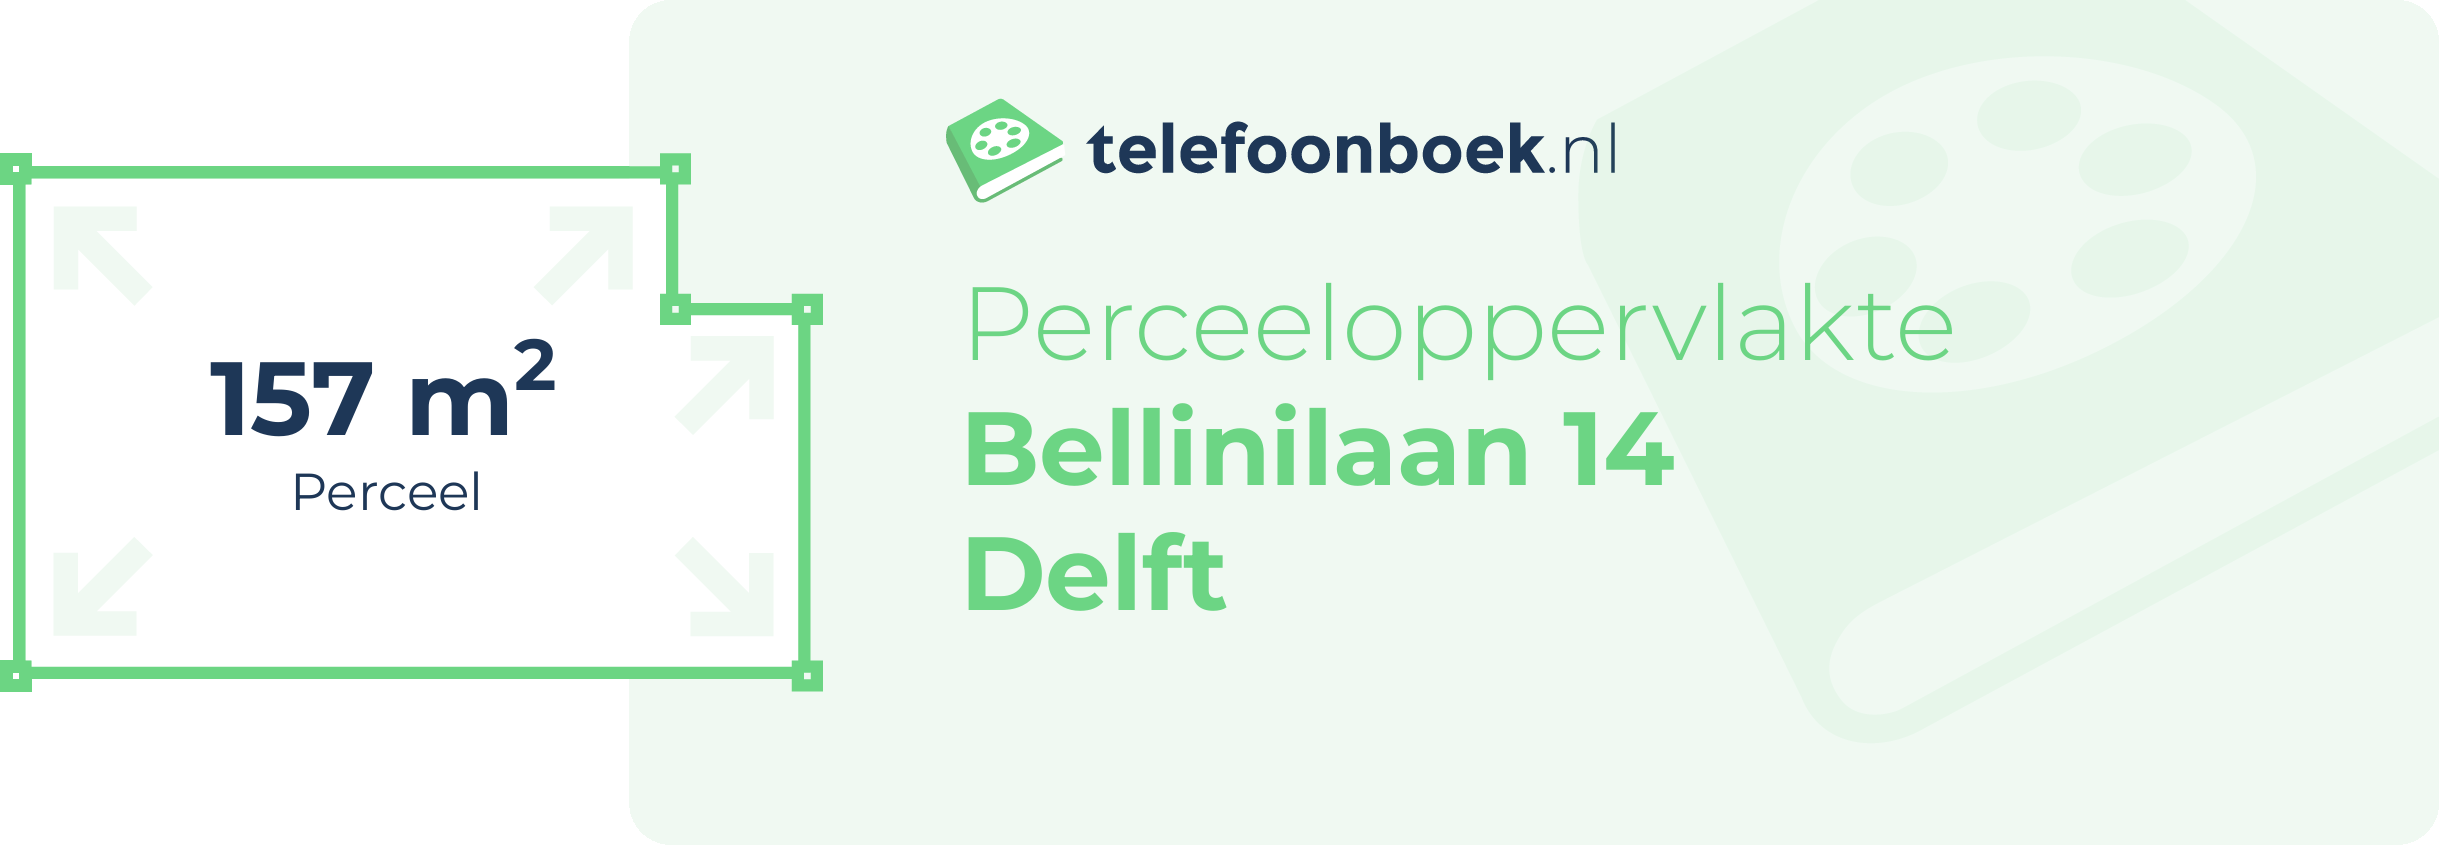 Perceeloppervlakte Bellinilaan 14 Delft